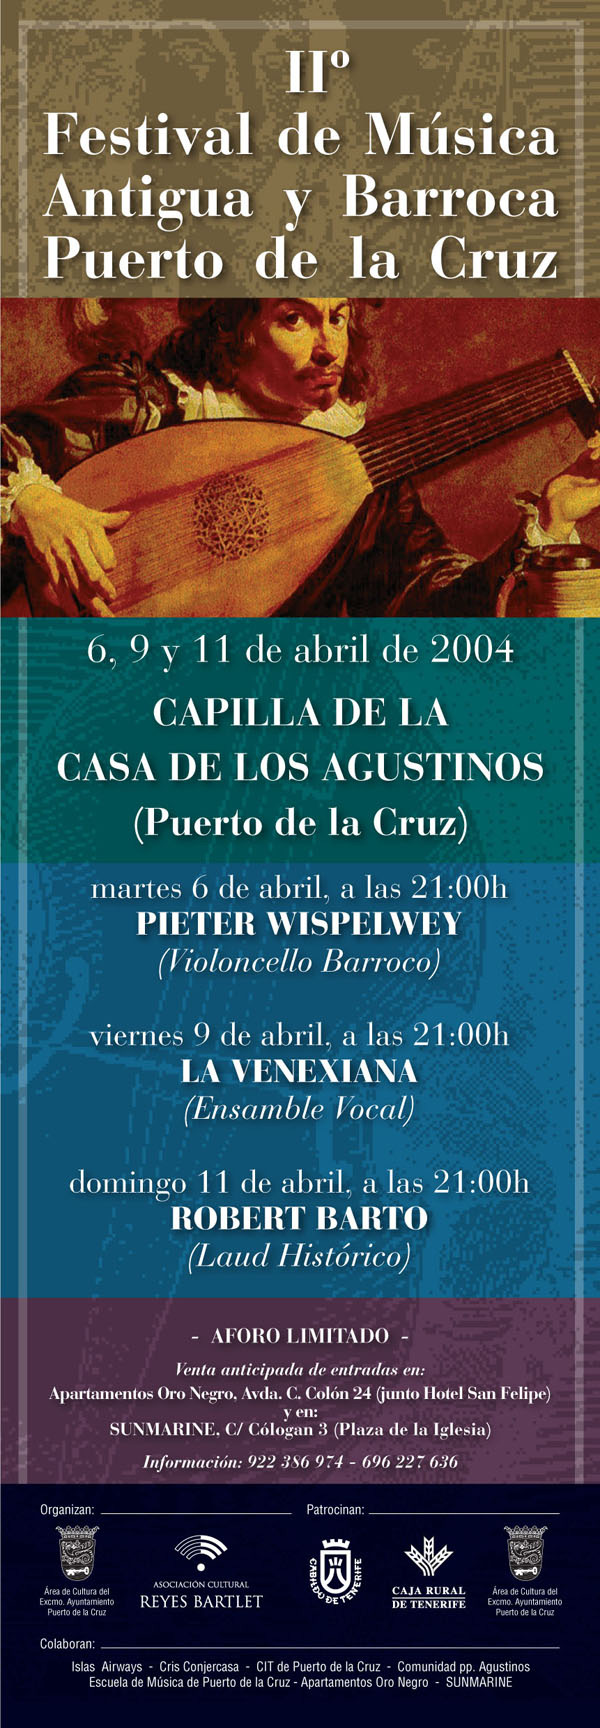 II Festival de Música Antigua y Barroca Puerto de la Cruz 2004